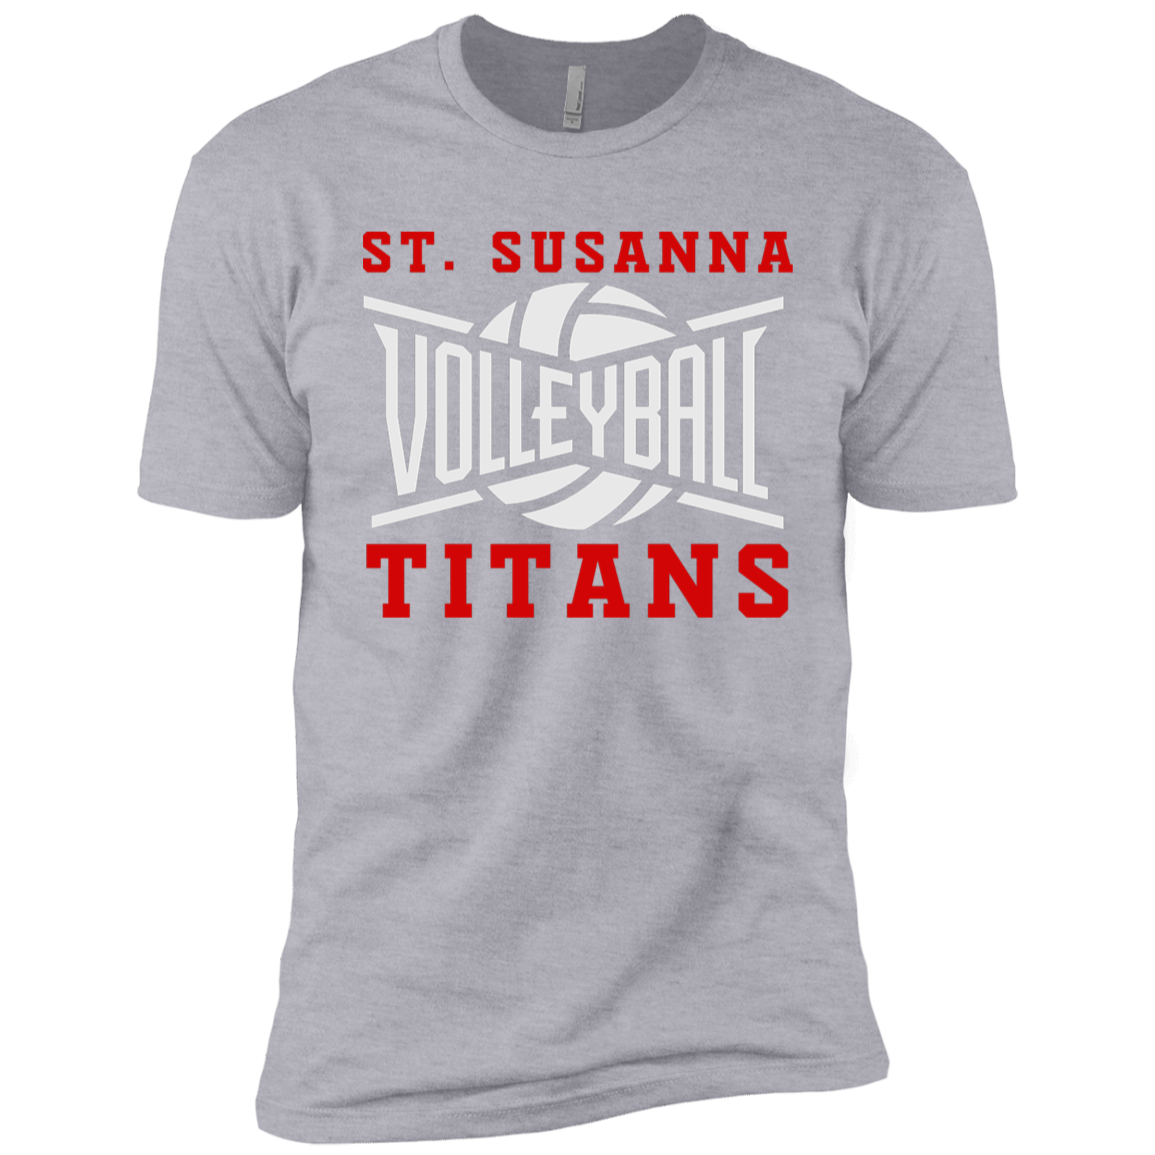 St. Susanna Volleyball Boys' Cotton T-Shirt